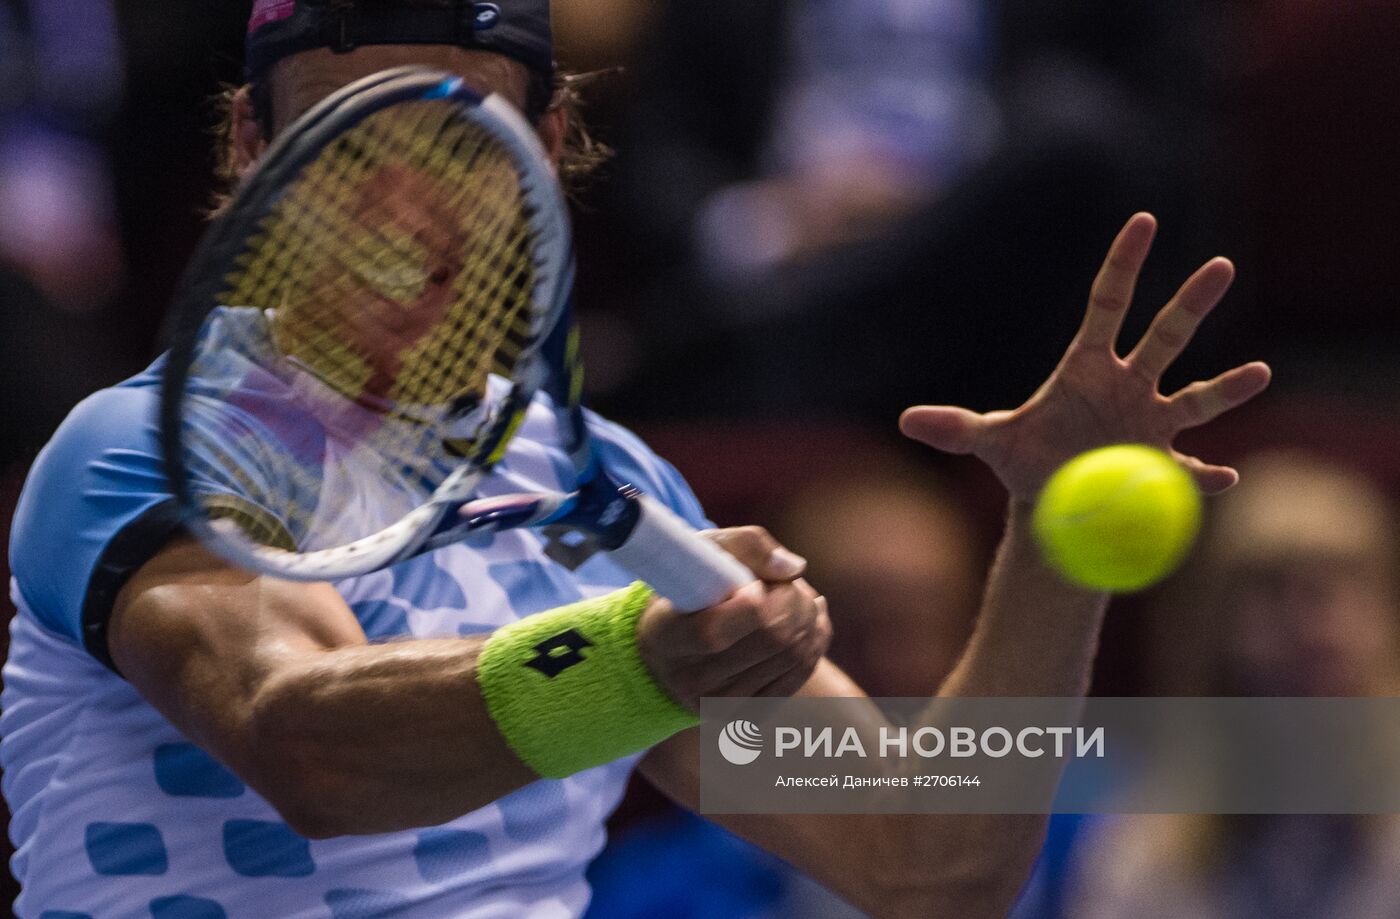 Теннис. St. Petersburg Open 2015. Шестой день